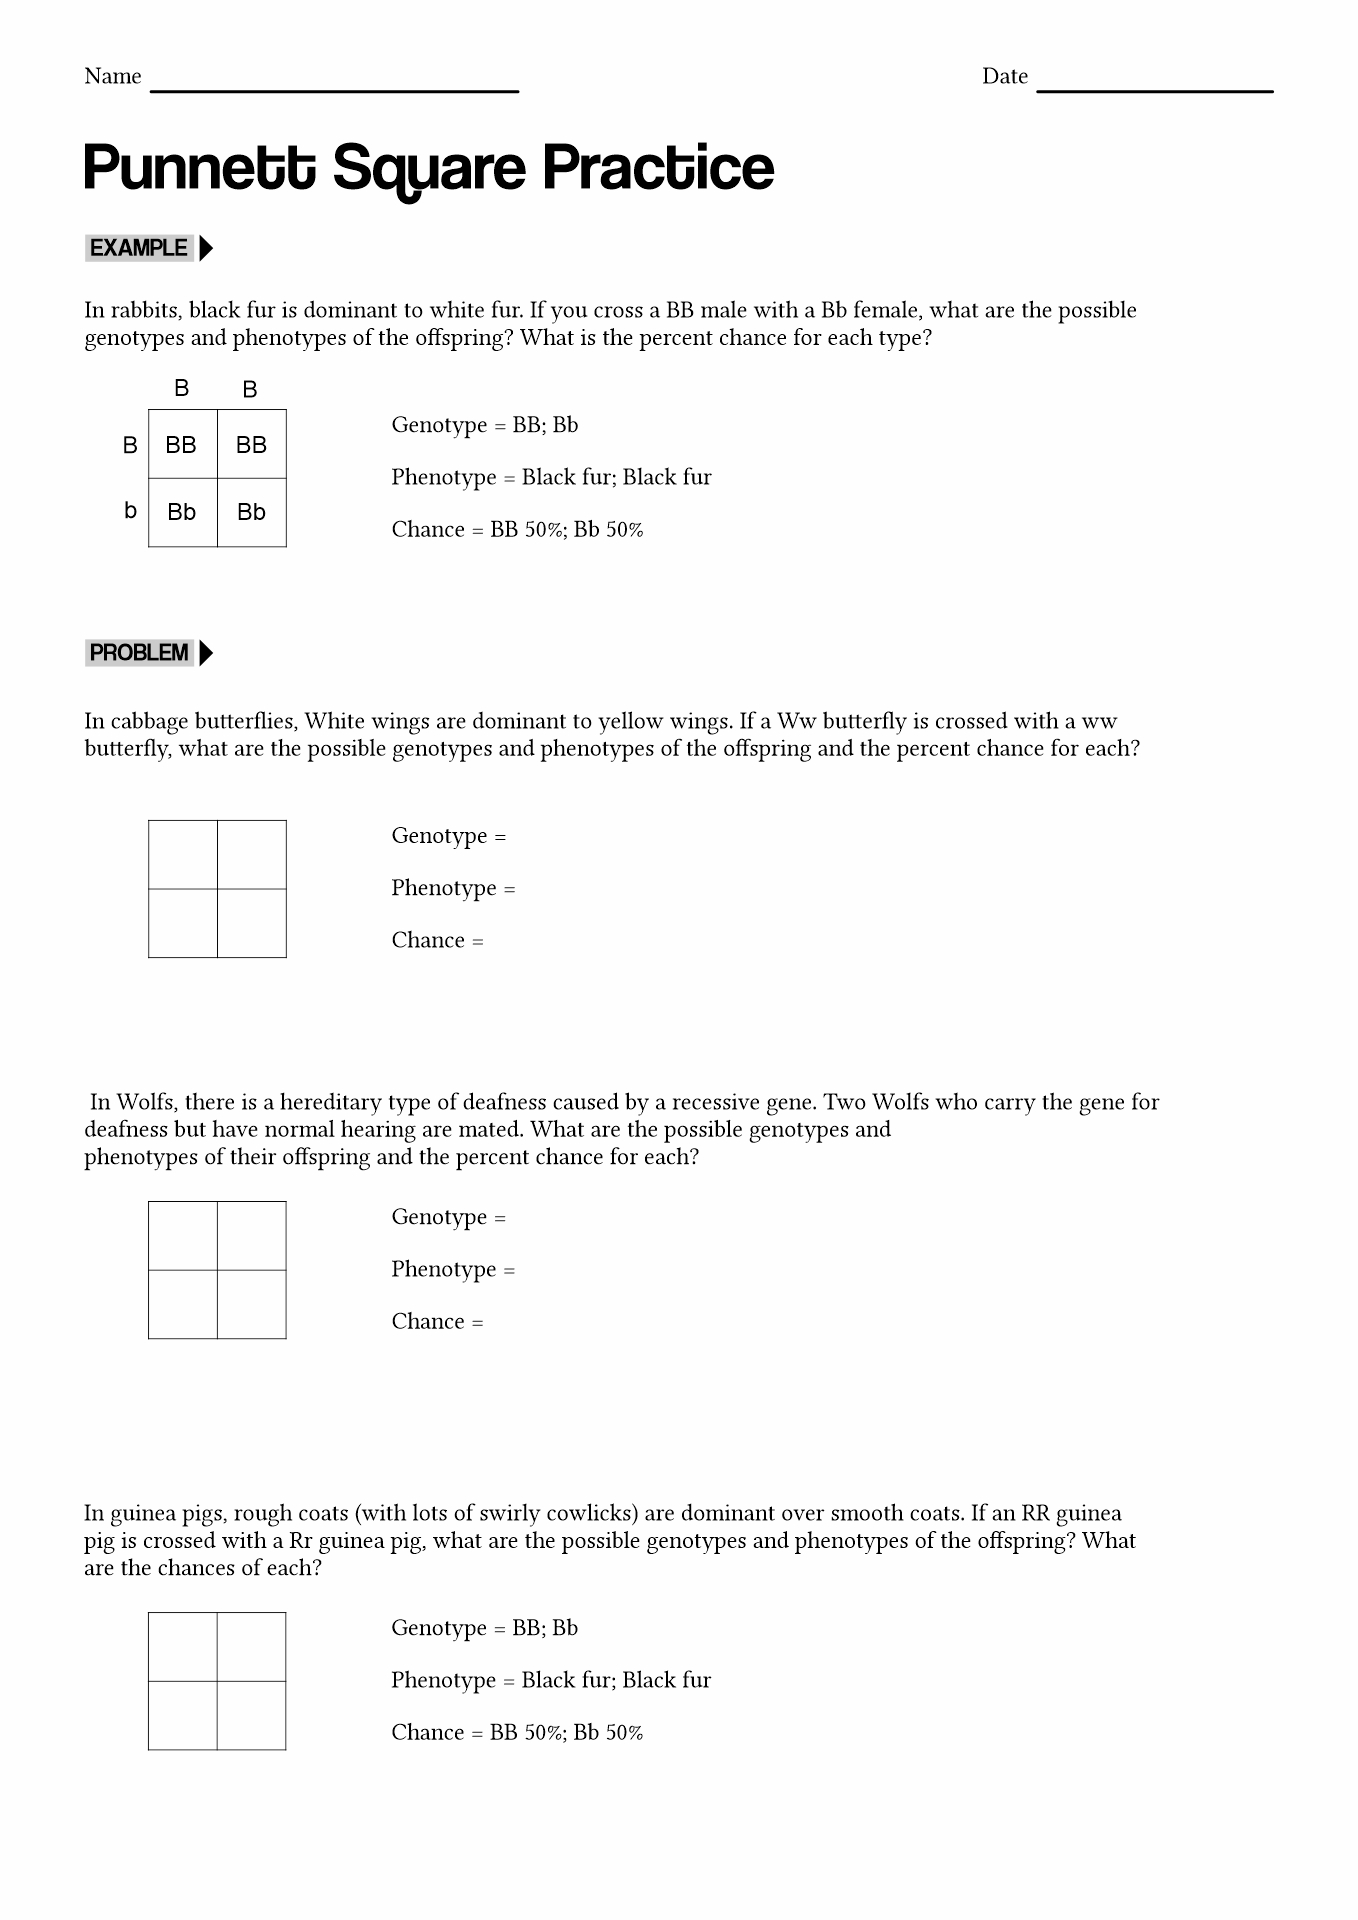 Punnett Square Practice Worksheet Answer